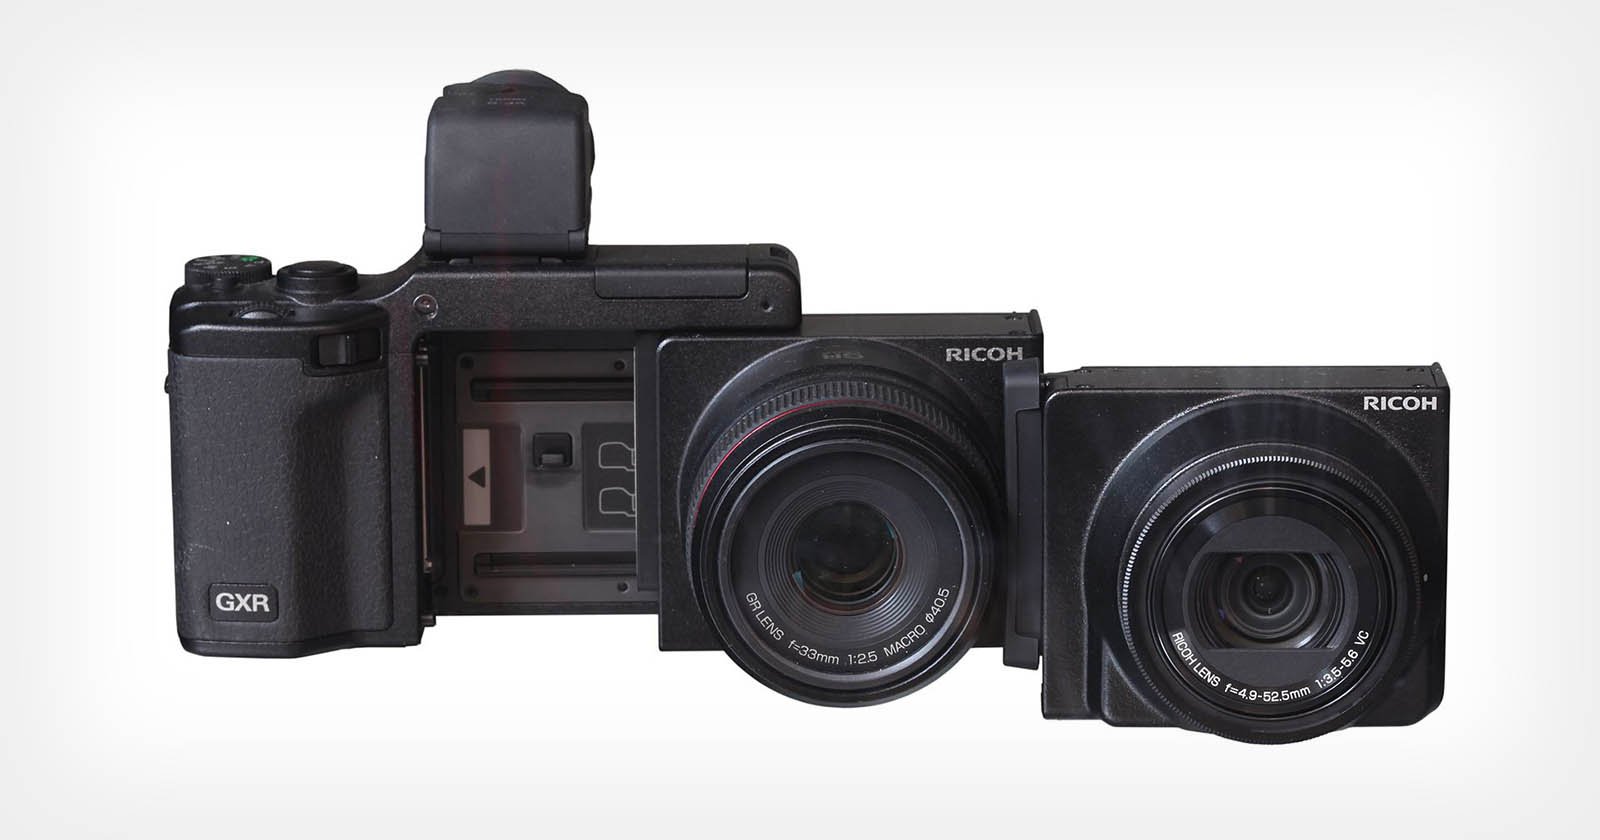  most unique digital cameras ever made 